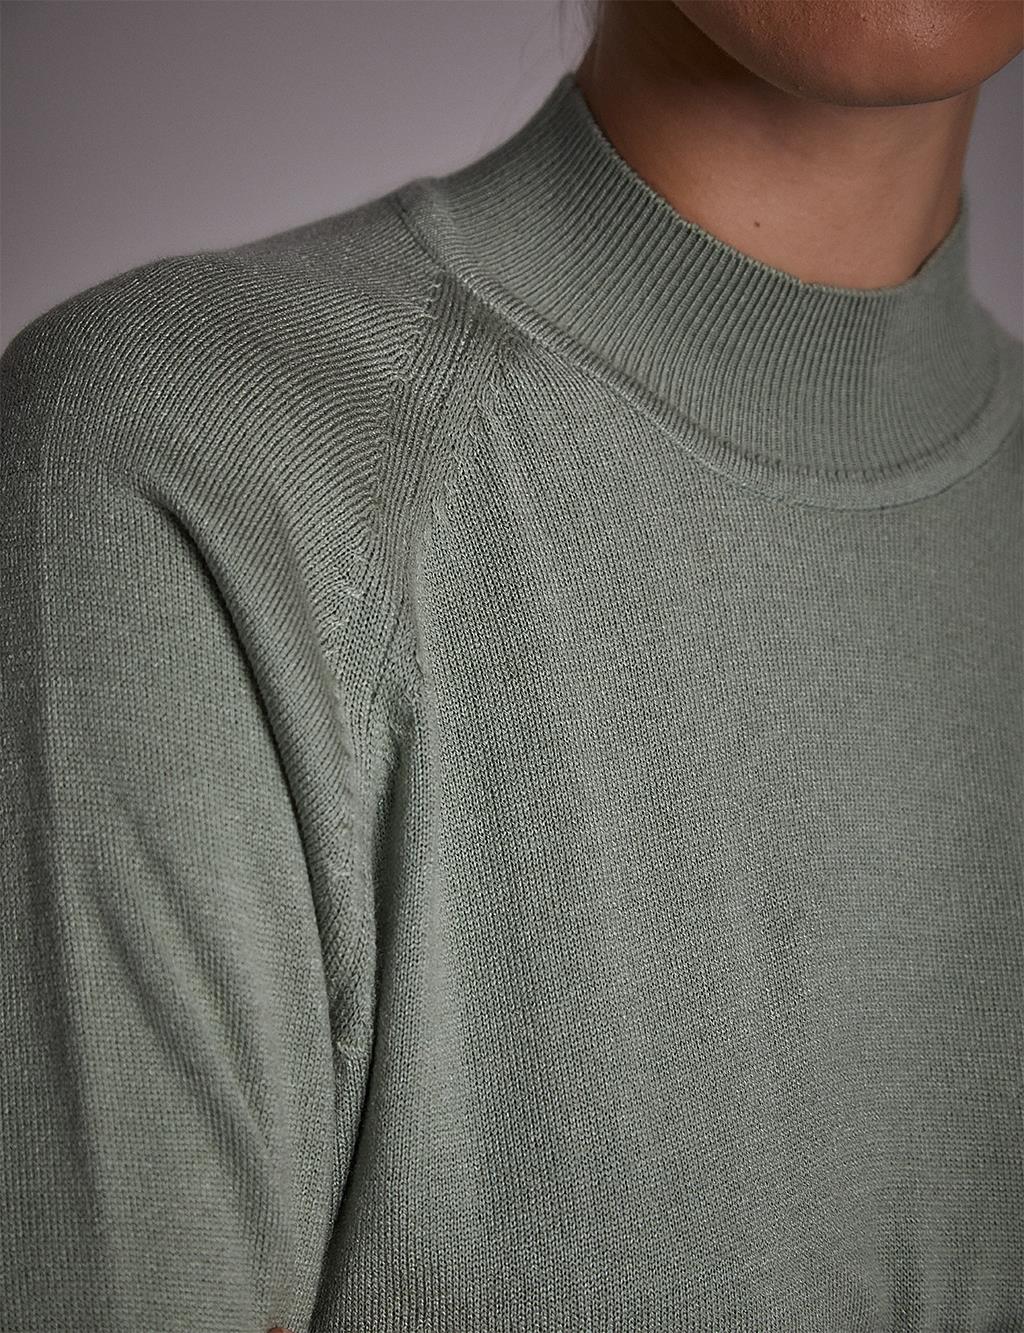 Half Turtleneck Knitwear Tunic Moss Green